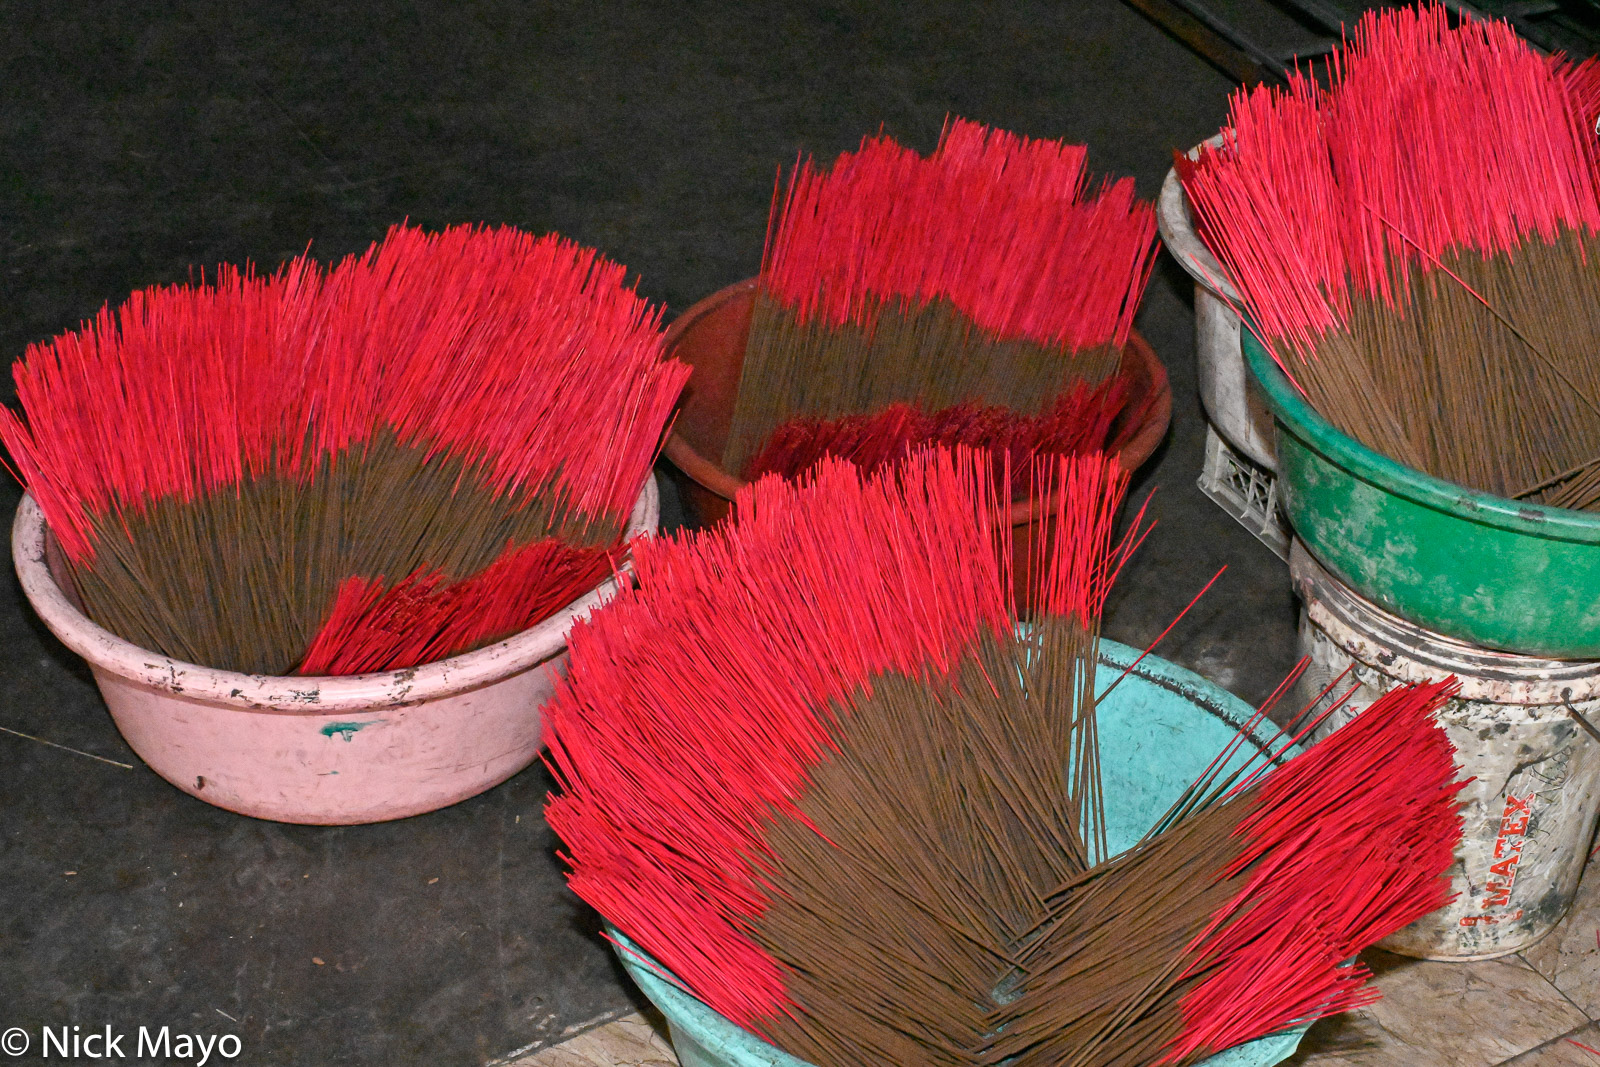 Bowls of incense sticks at Quang Phu Cau.